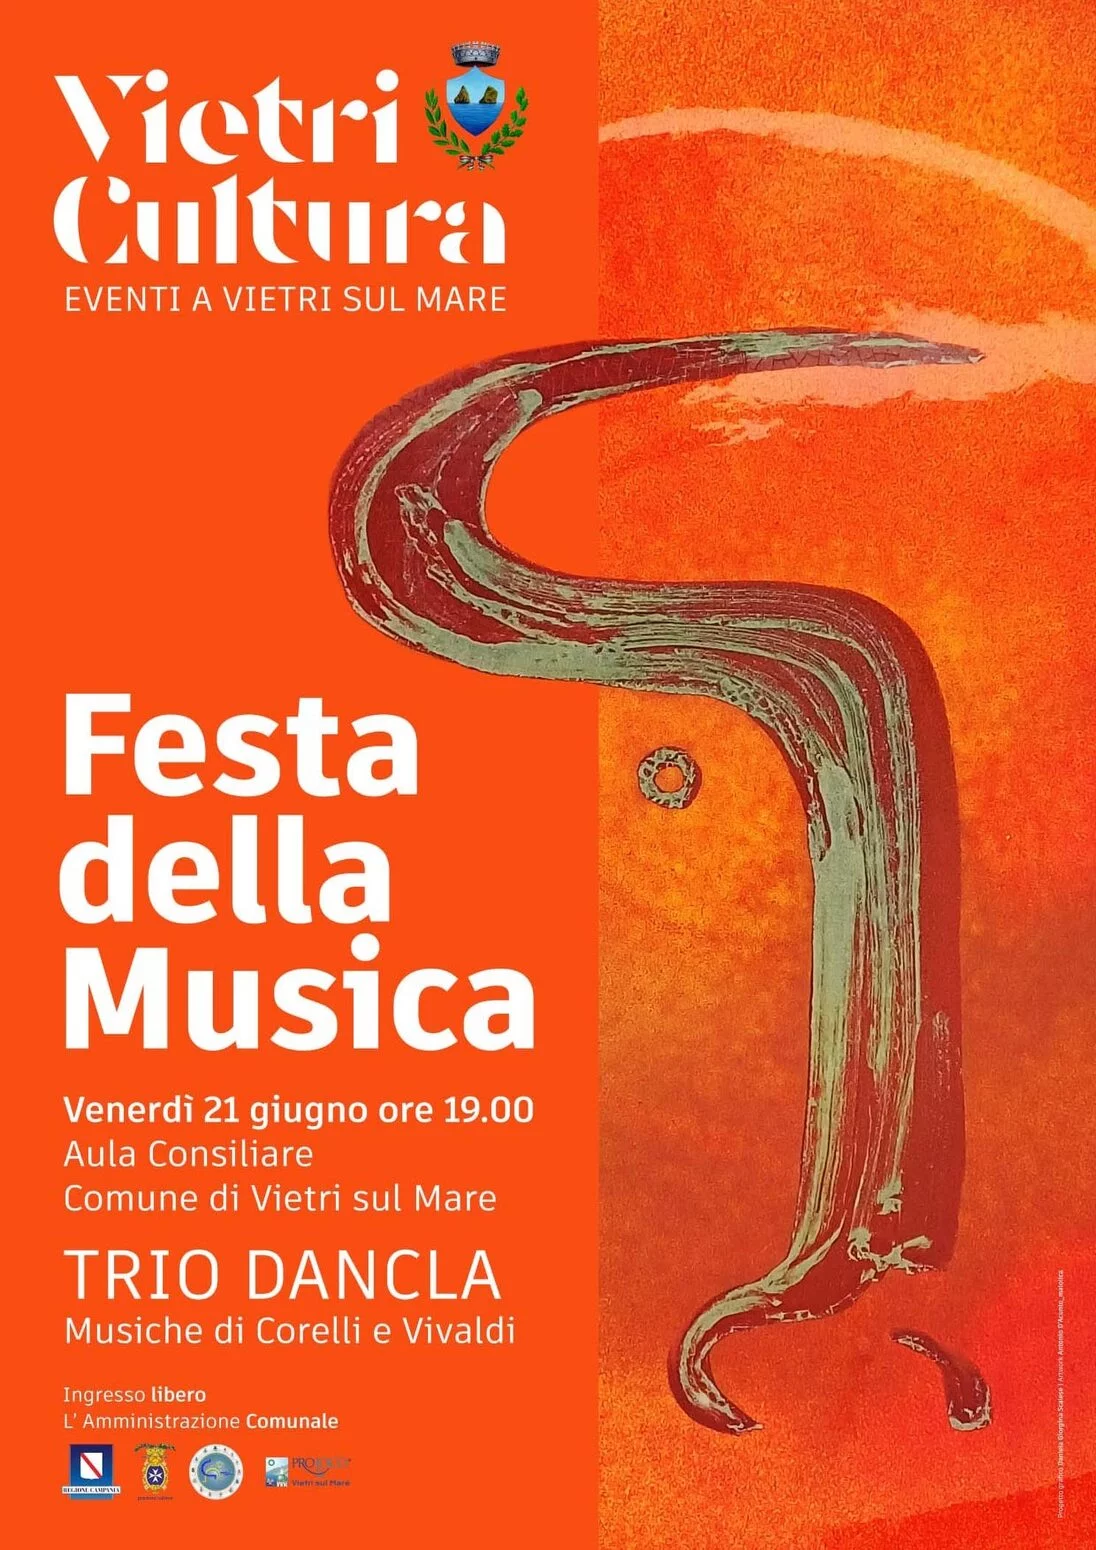 Vietri Cultura. Festa della Musica. concerto del Trio Dancla